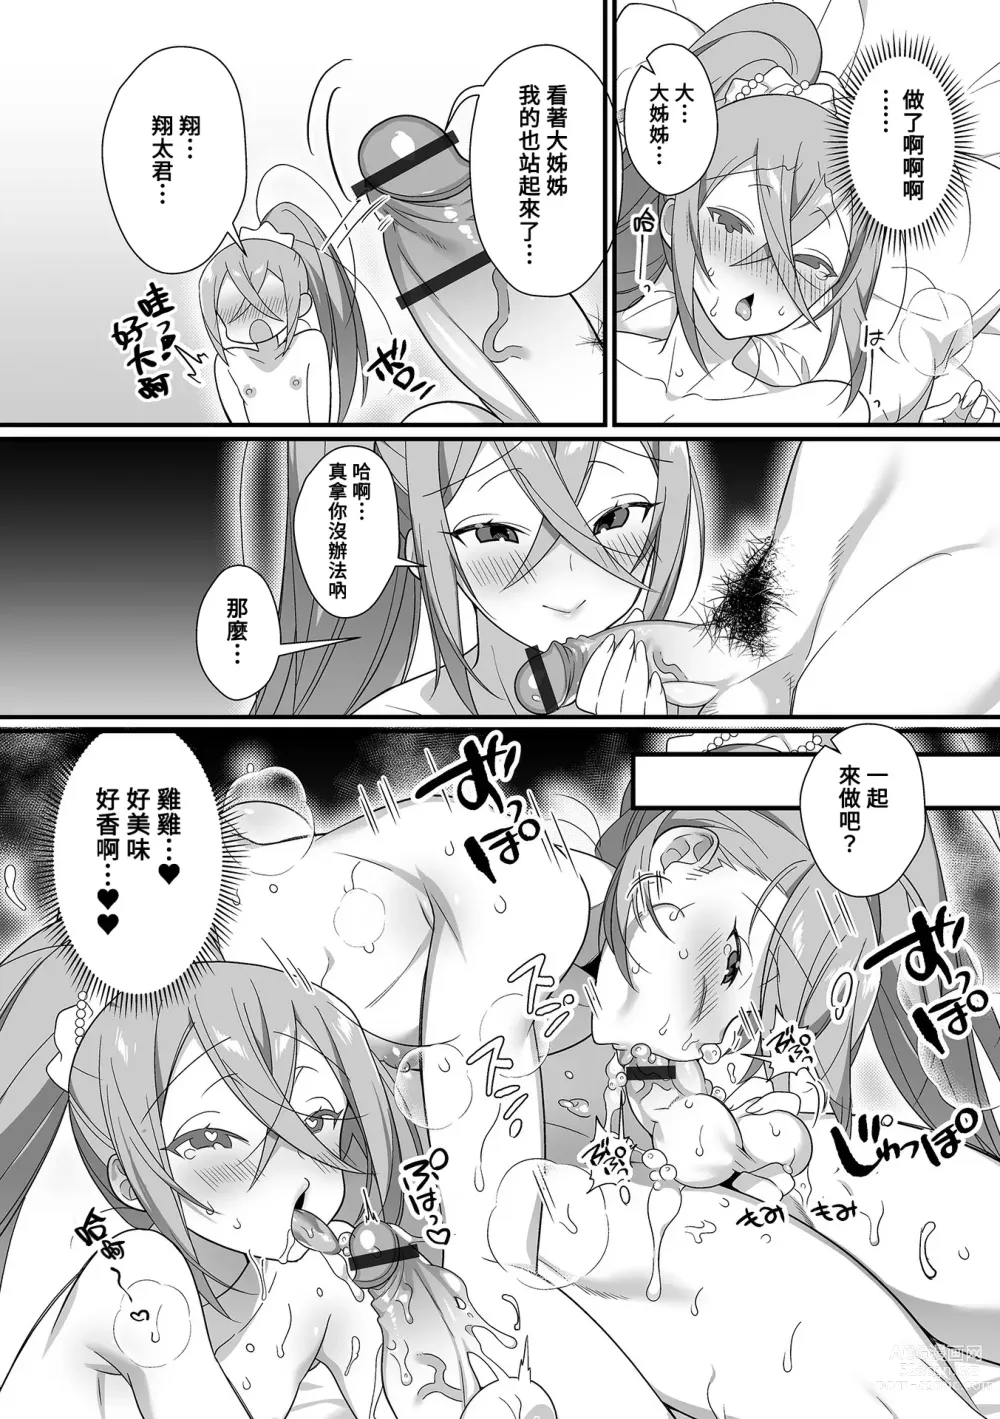 Page 7 of manga Kireina Onesan♂ wa Sukidesuka?